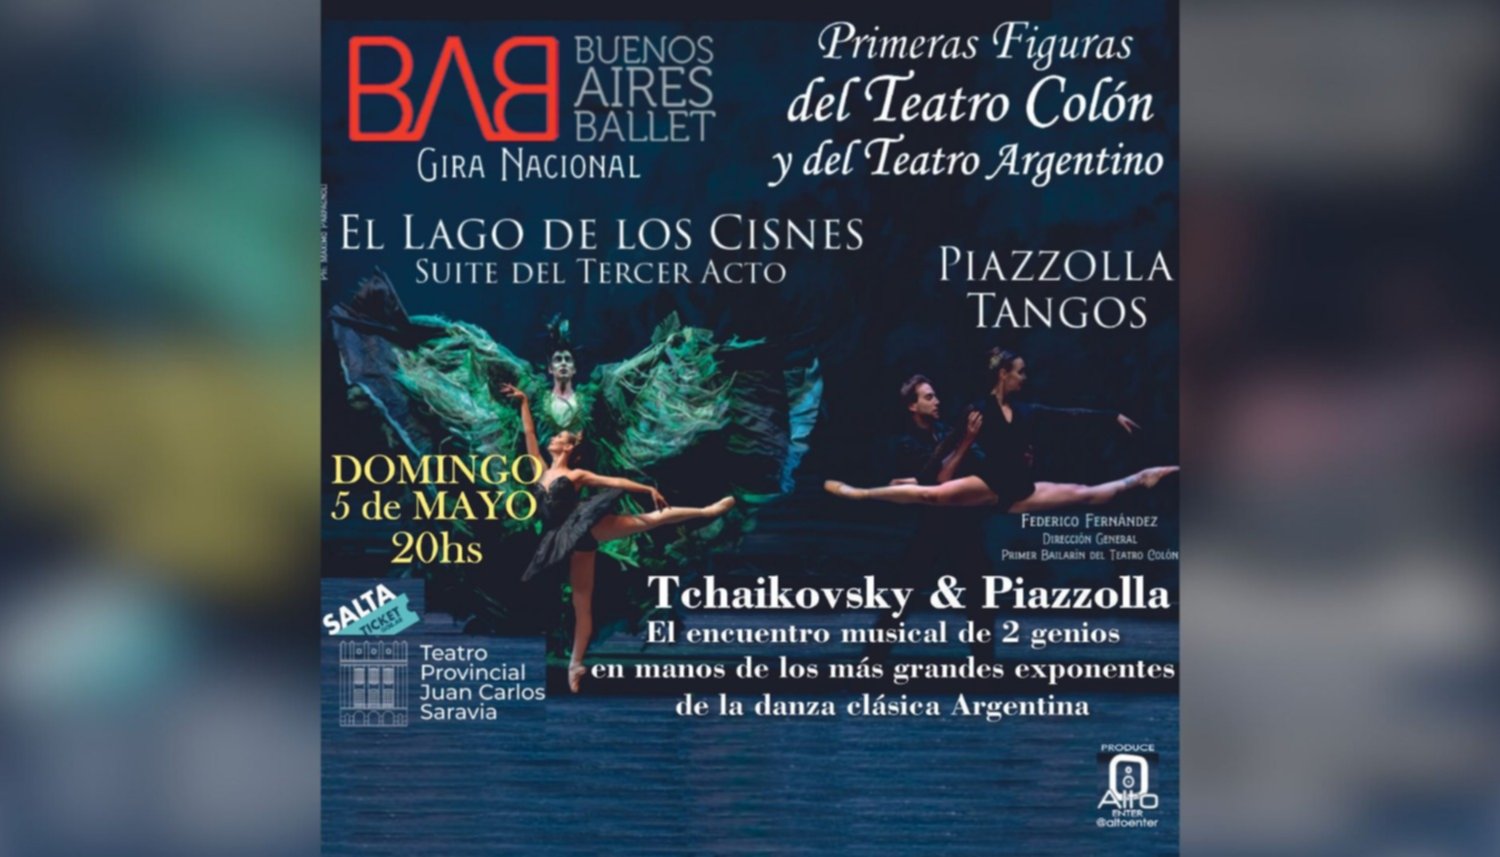 El Lago de los Cisnes - Buenos Aires Ballet 2x1 con Club